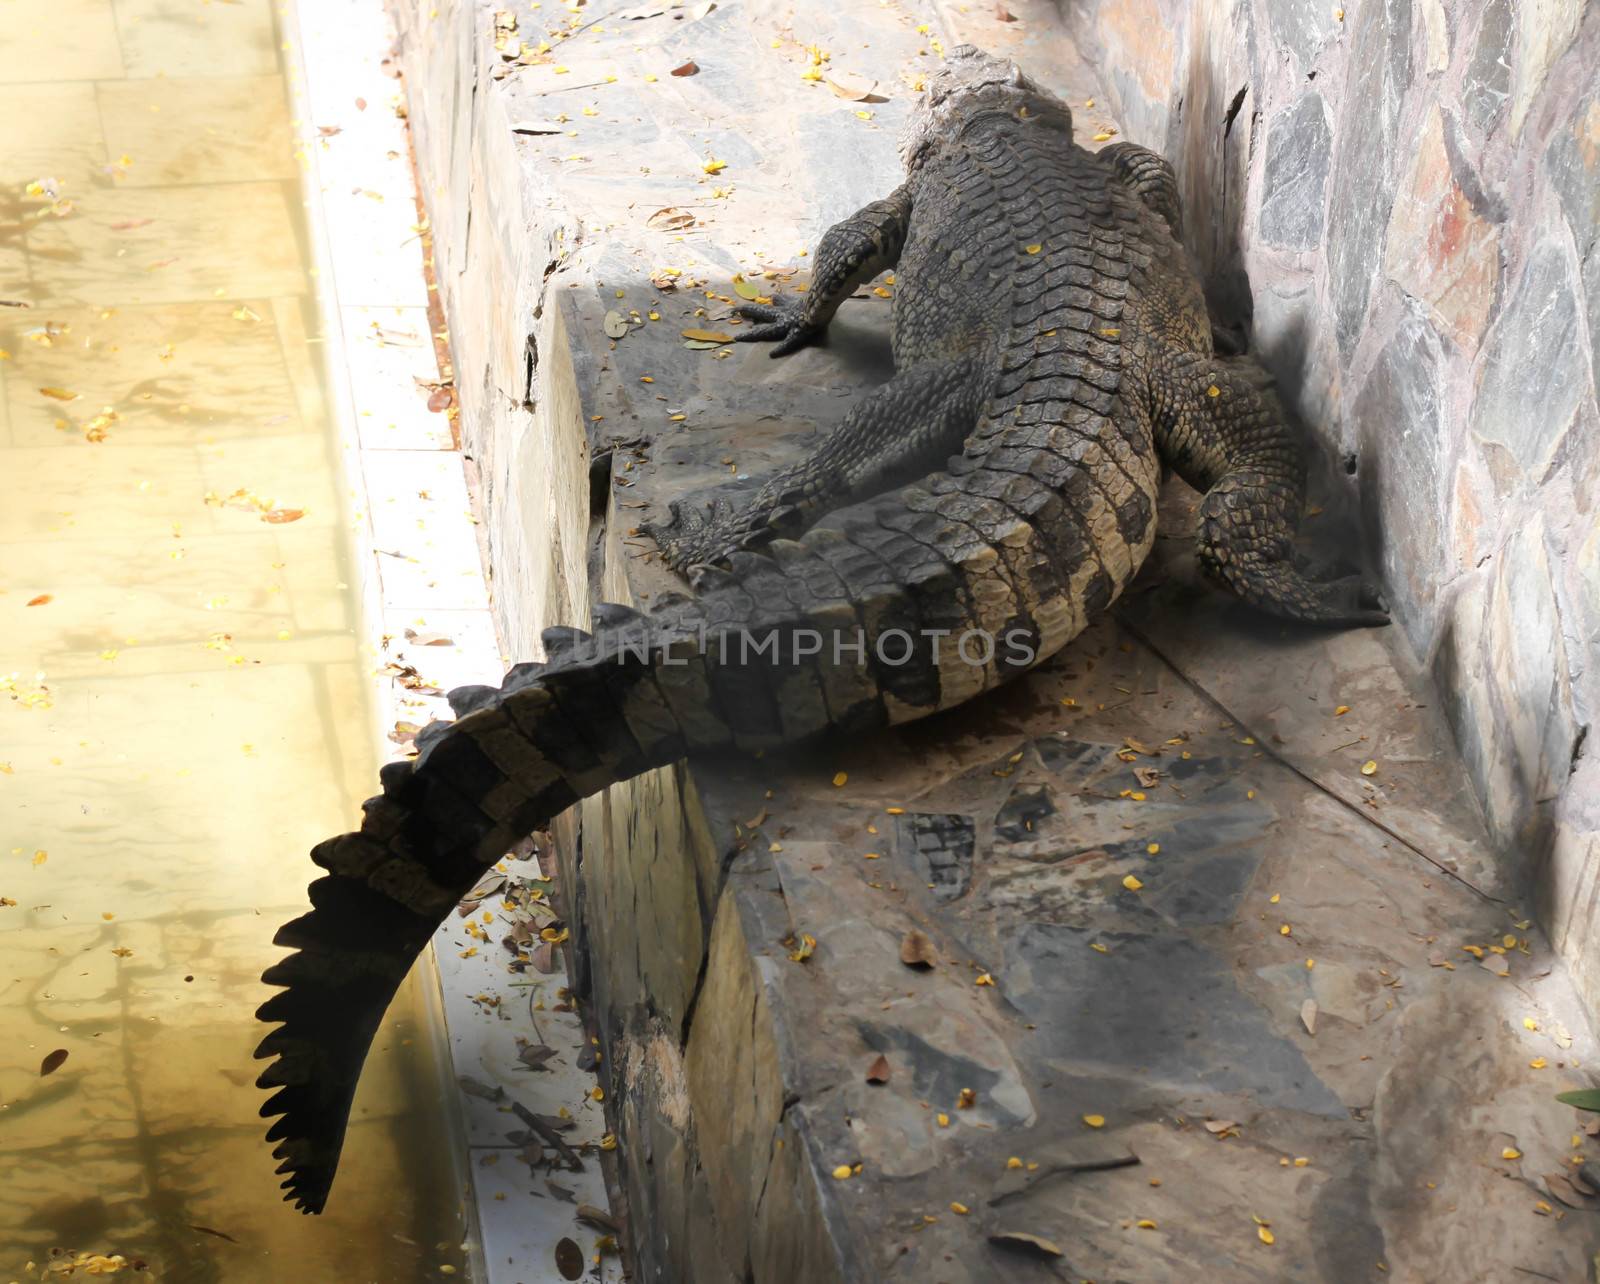 Alligator in pond at thailand